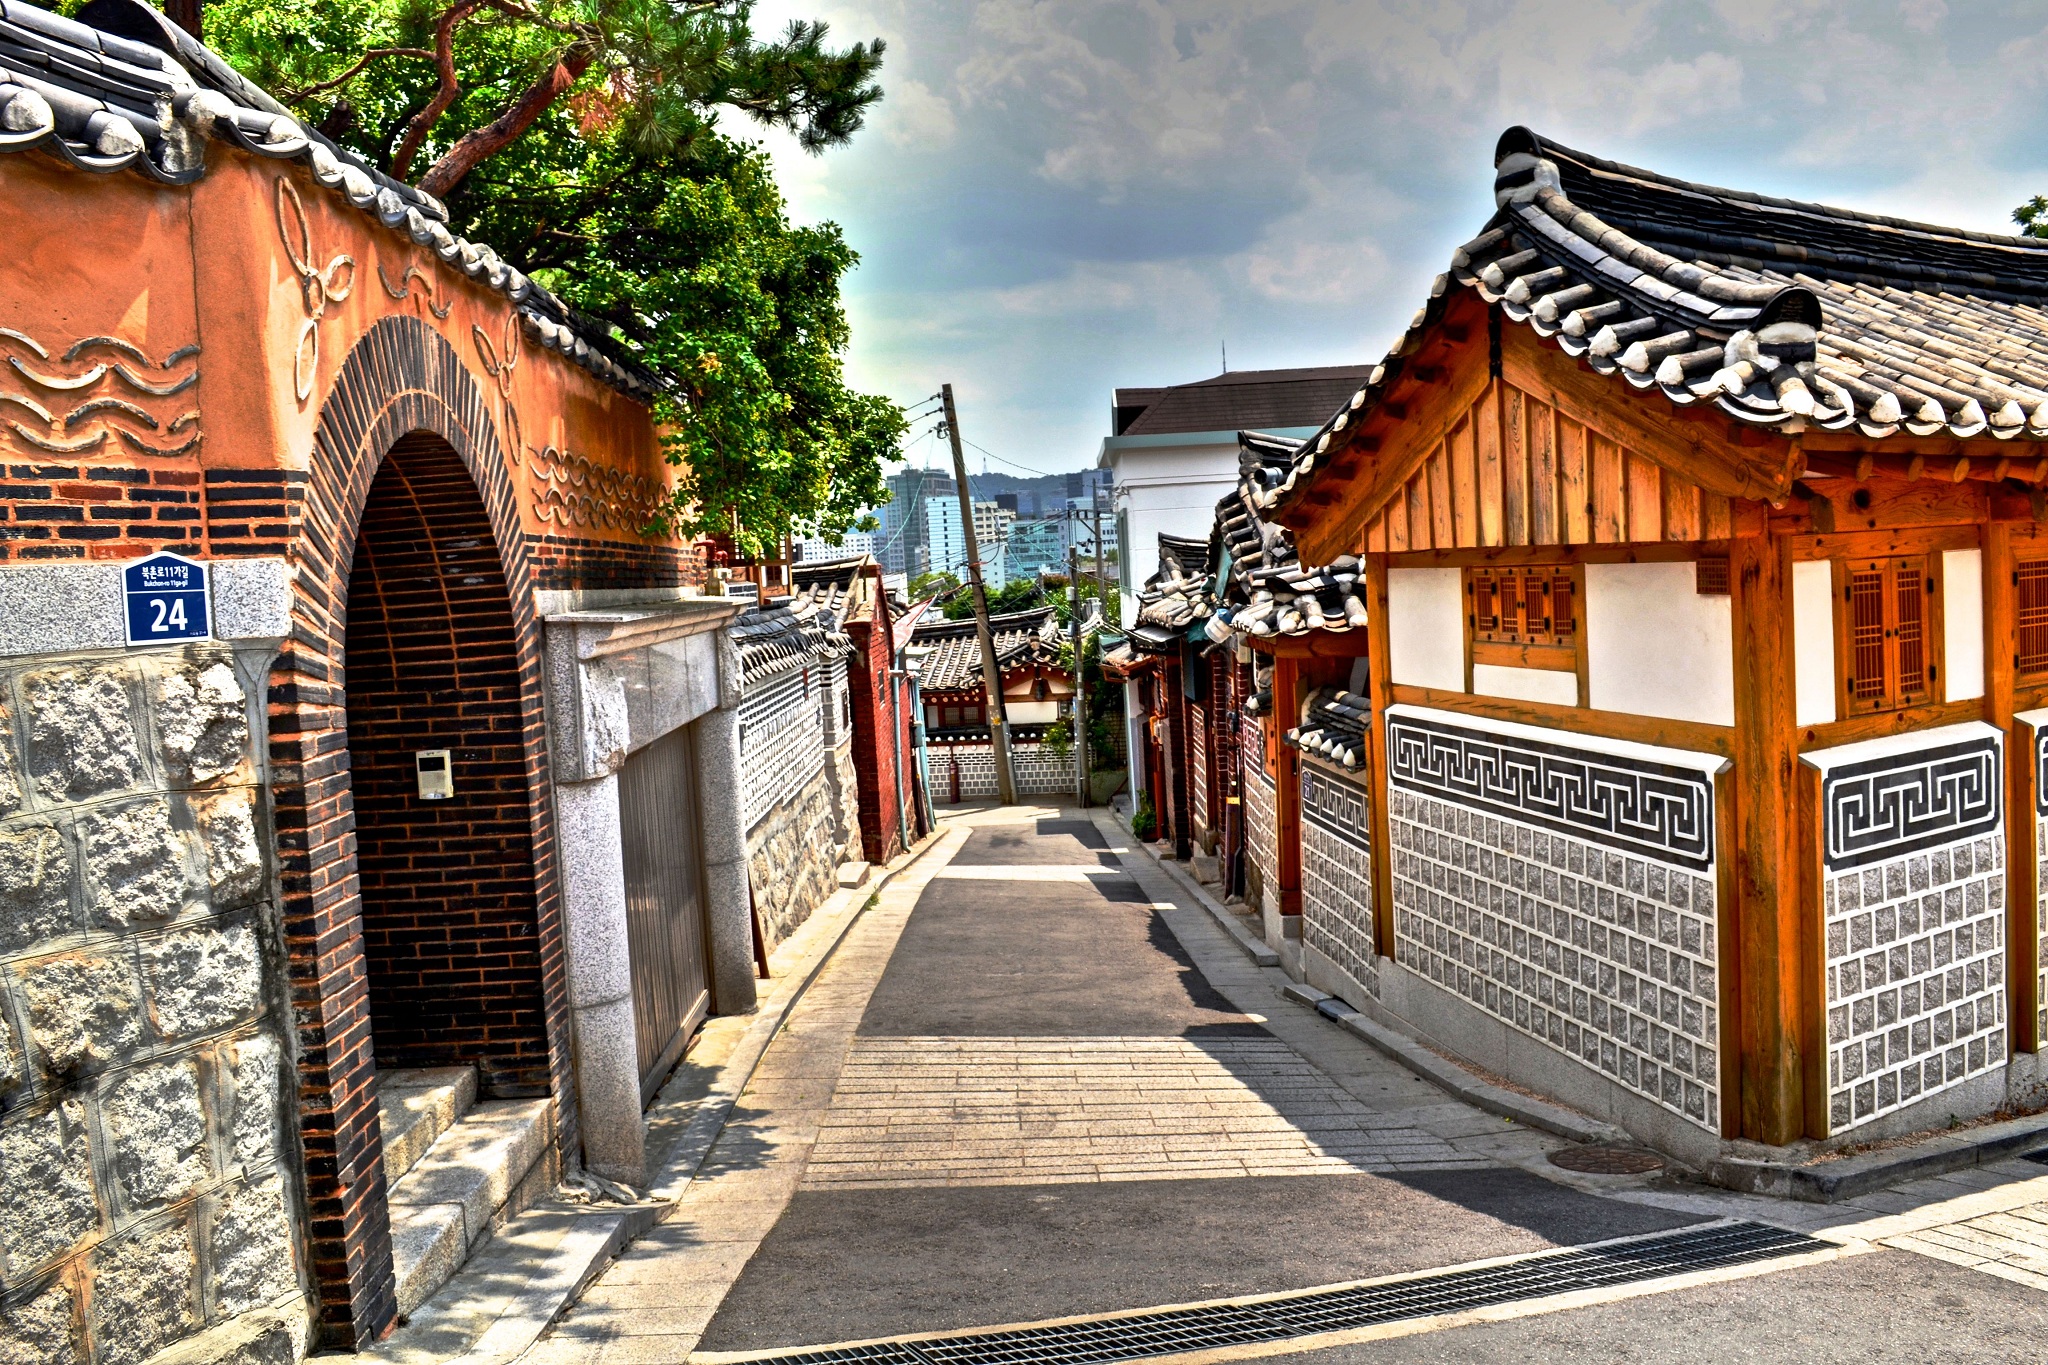 Seoul - thủ đô Hàn Quốc là một thành phố hiện đại và đầy mê hoặc với nhiều địa điểm tham quan, giải trí và ẩm thực. Tại đây, du khách có thể tìm hiểu về lịch sử và văn hóa Hàn Quốc thông qua các di tích lịch sử và chứng tích kiến trúc nghệ thuật. Xem hình ảnh liên quan để cảm nhận vẻ đẹp và sự hấp dẫn của Seoul.